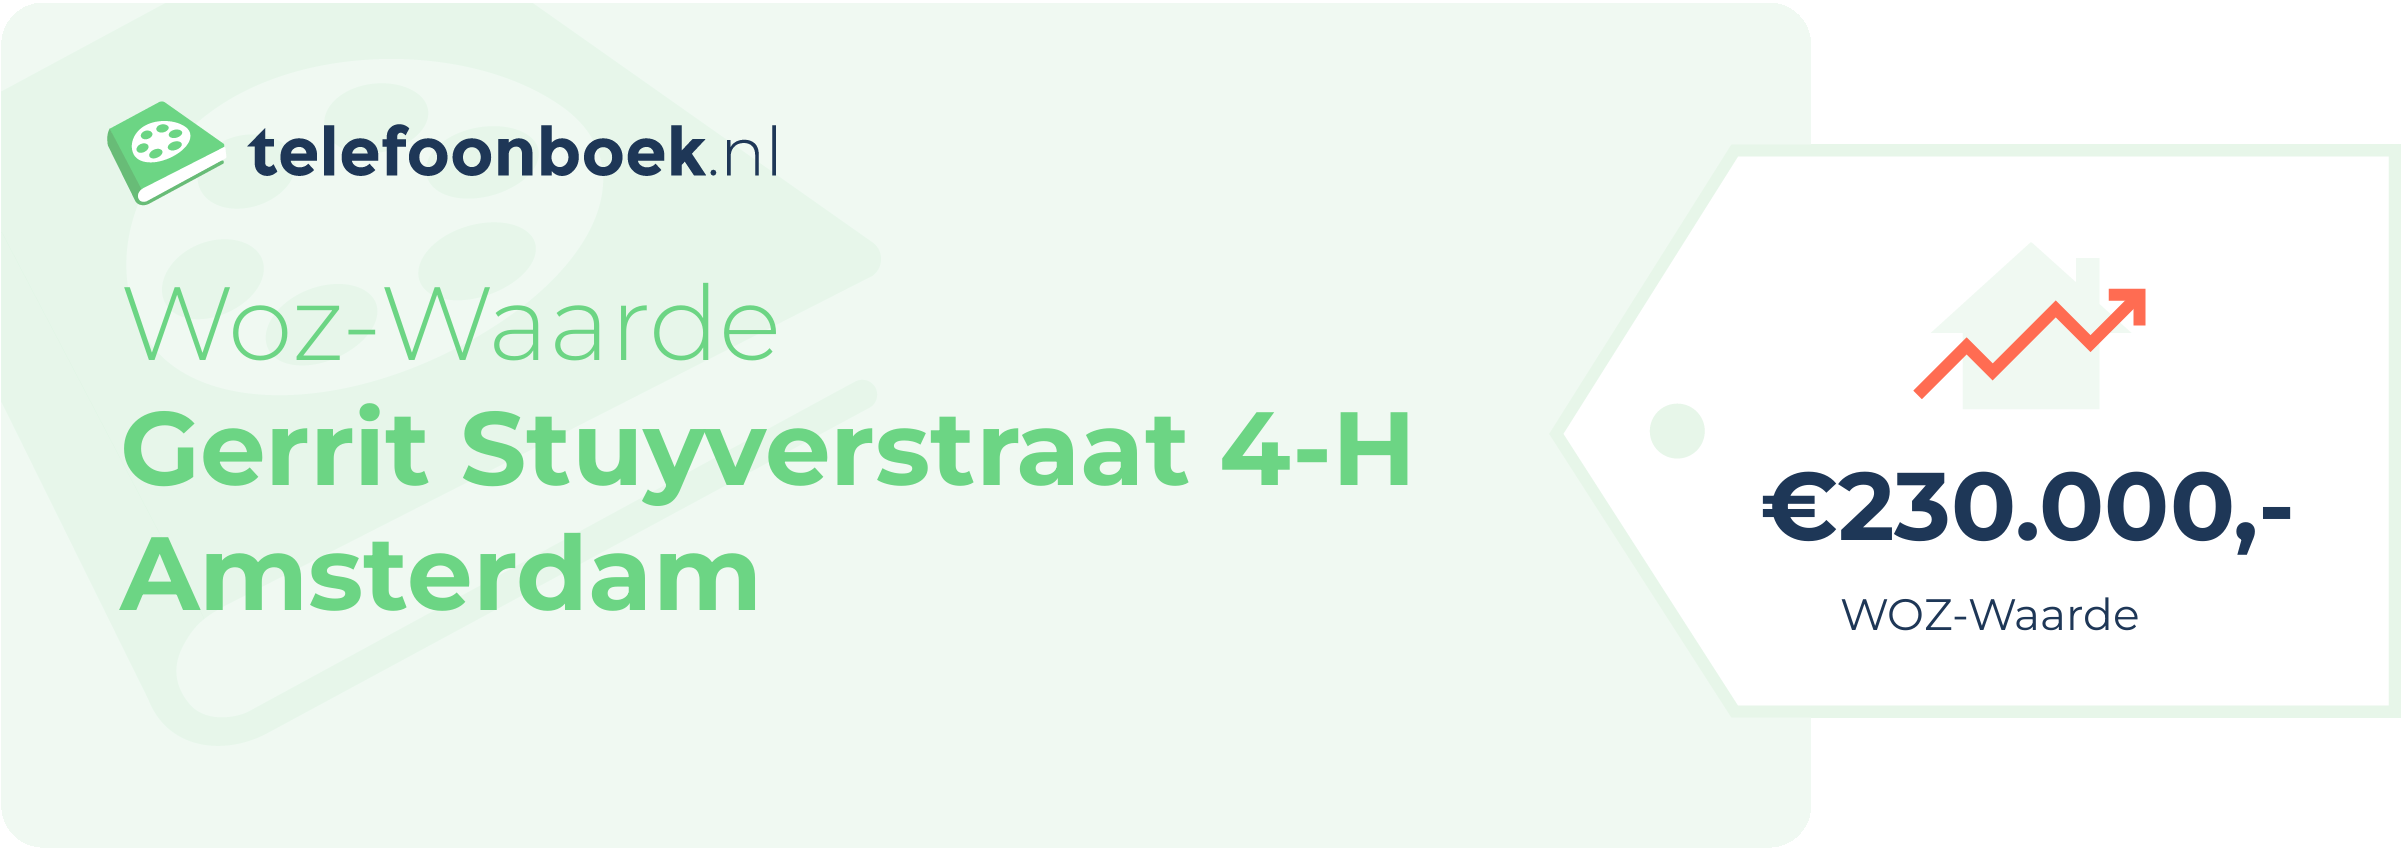 WOZ-waarde Gerrit Stuyverstraat 4-H Amsterdam